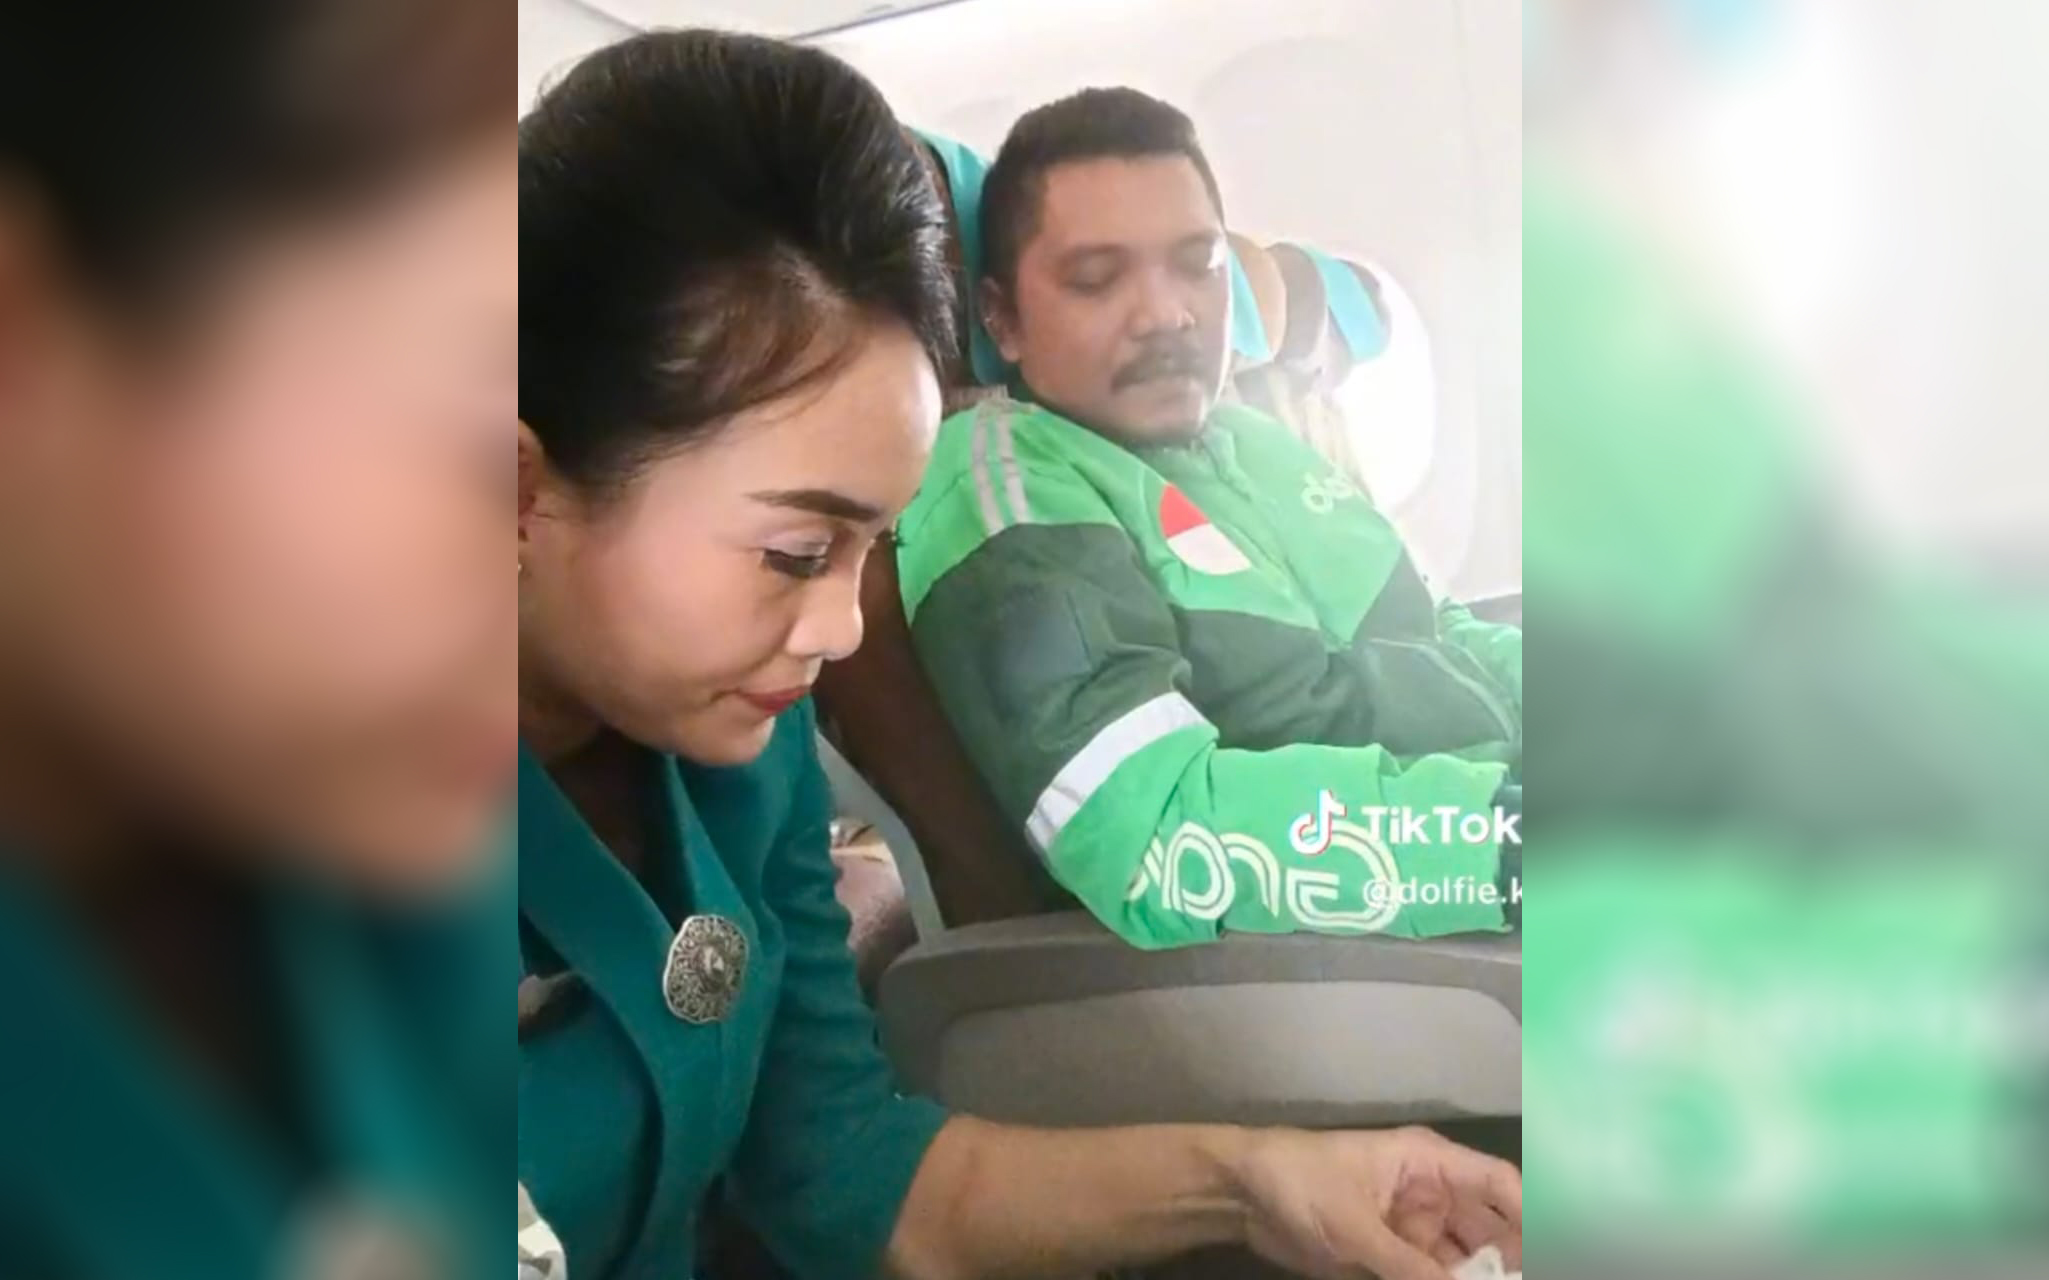 Anggota Dewan Nyamar Jadi Ojol Beli Bakpiah Patok Pakai Pesawat, Kini Dilaporkan ke BK DPRD Kota Medan